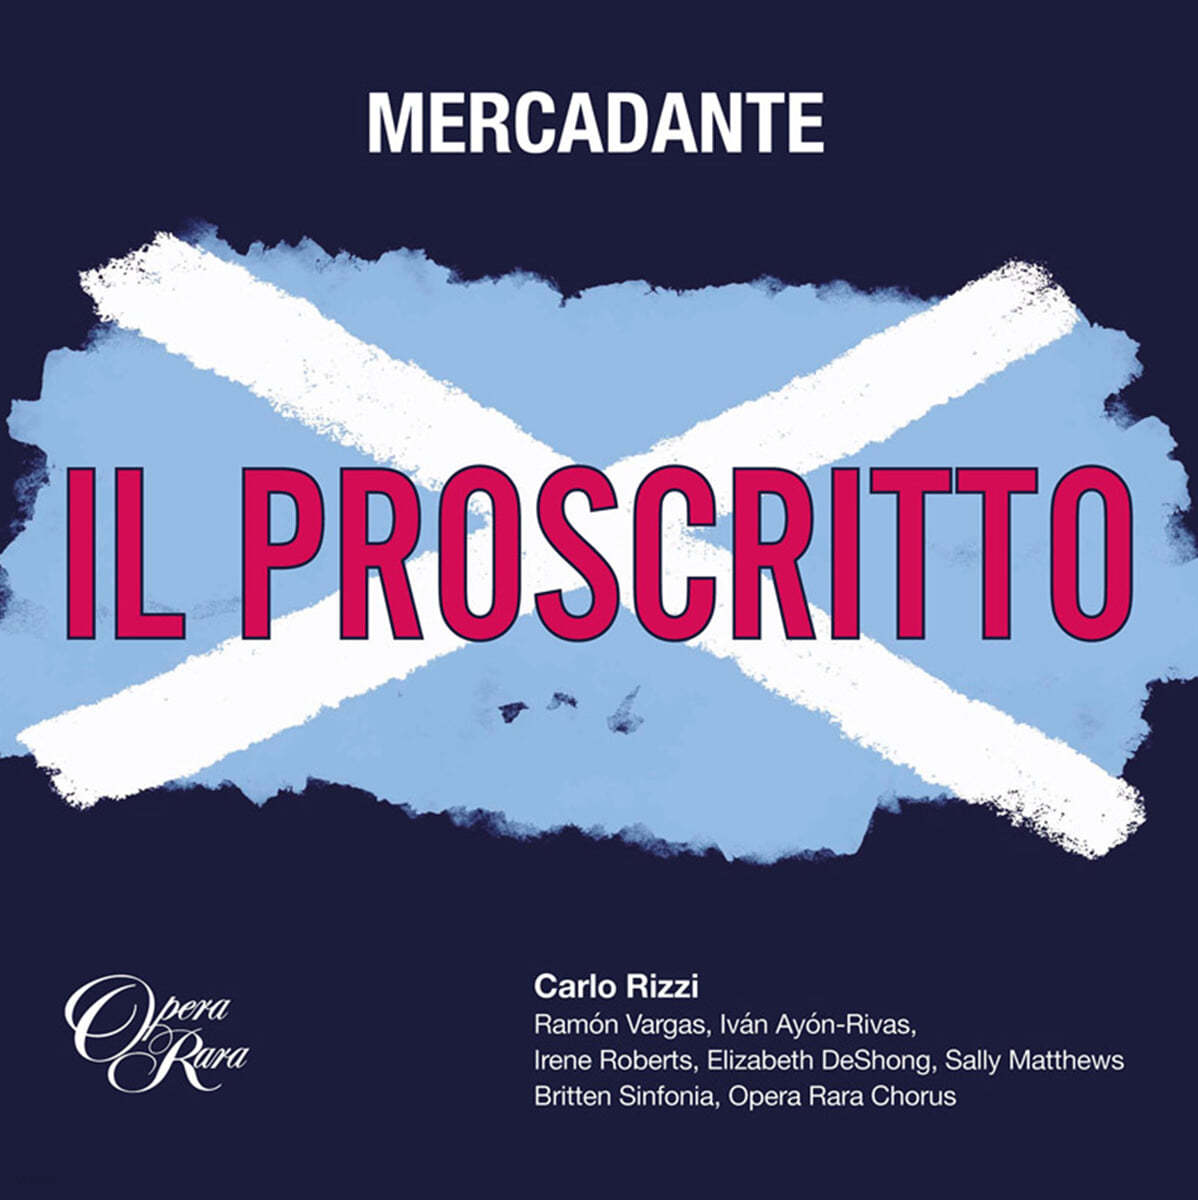 Carlo Rizzi 메르카단테: 오페라 '추방자' (Mercadante: Il proscritto)